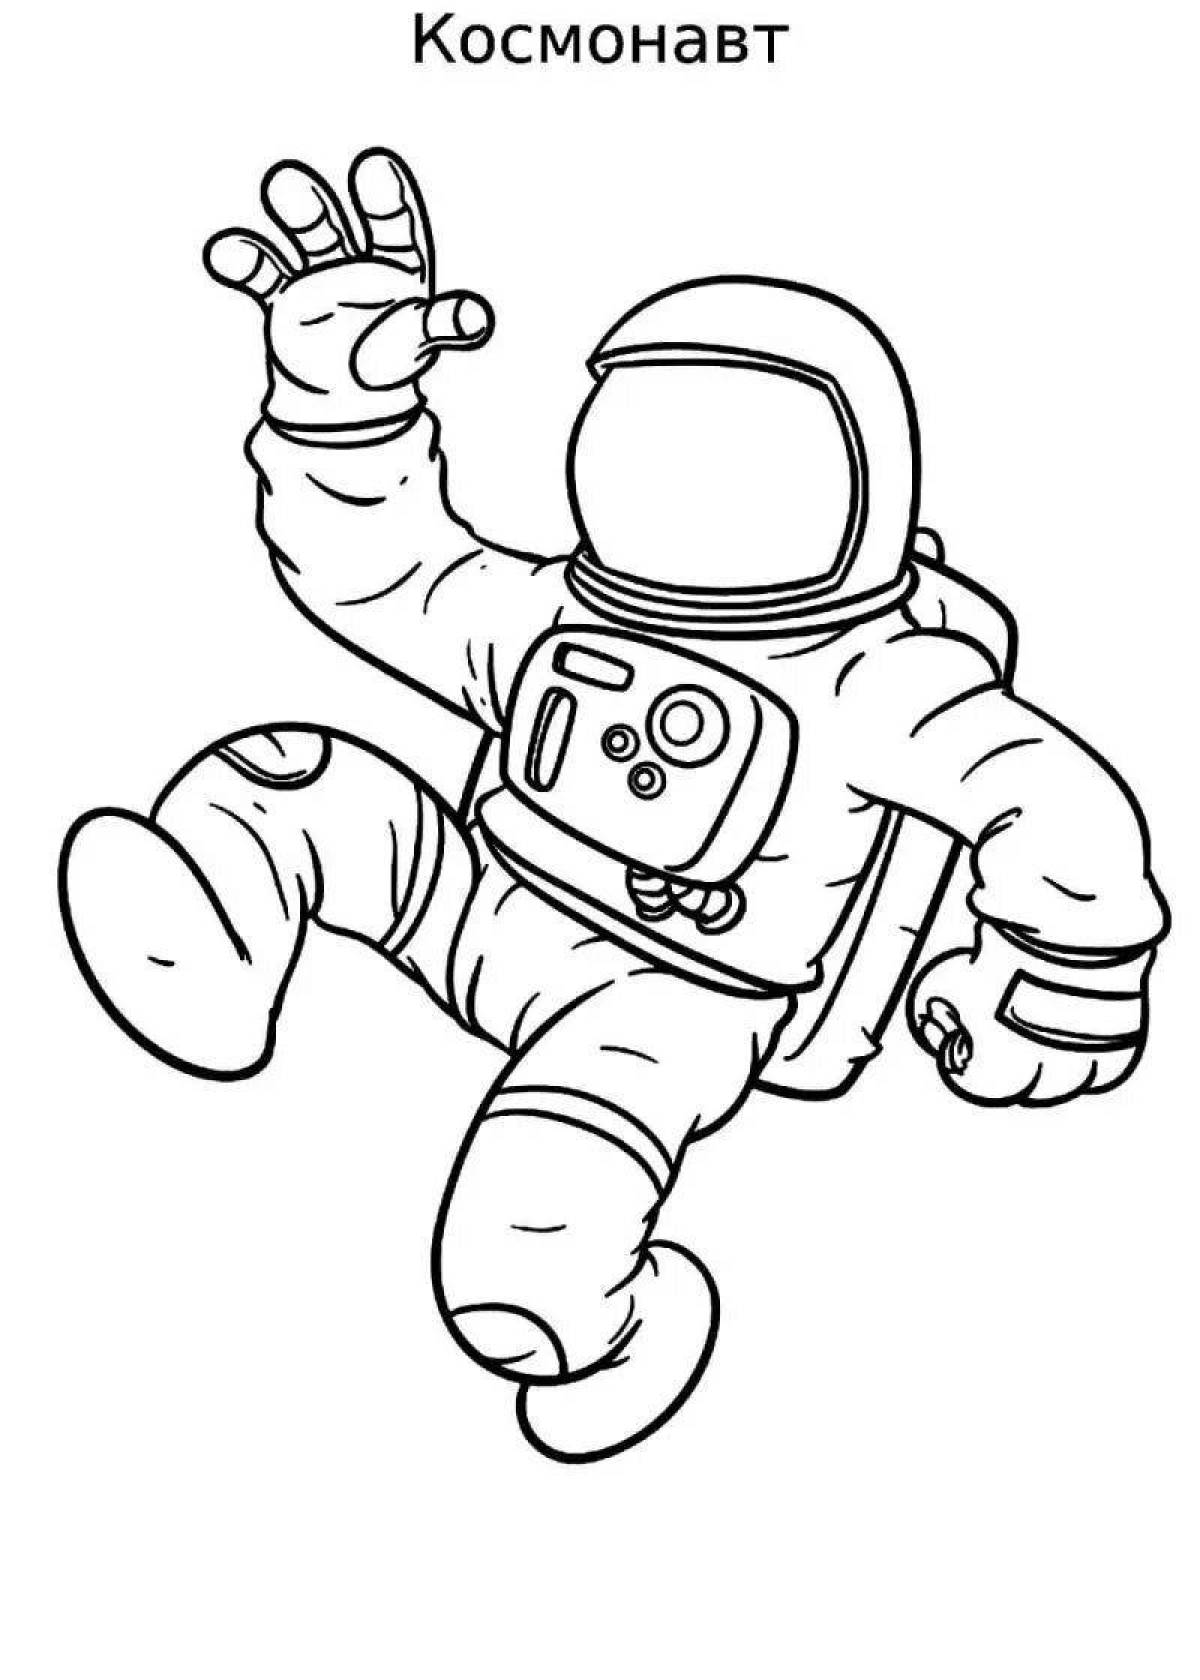 Как разукрасить космонавта. Раскраска космонавт в скафандре. Раскраска Космонавта в скафандре для детей. Космонавт раскраска для детей. Космонавт рисунок для детей.